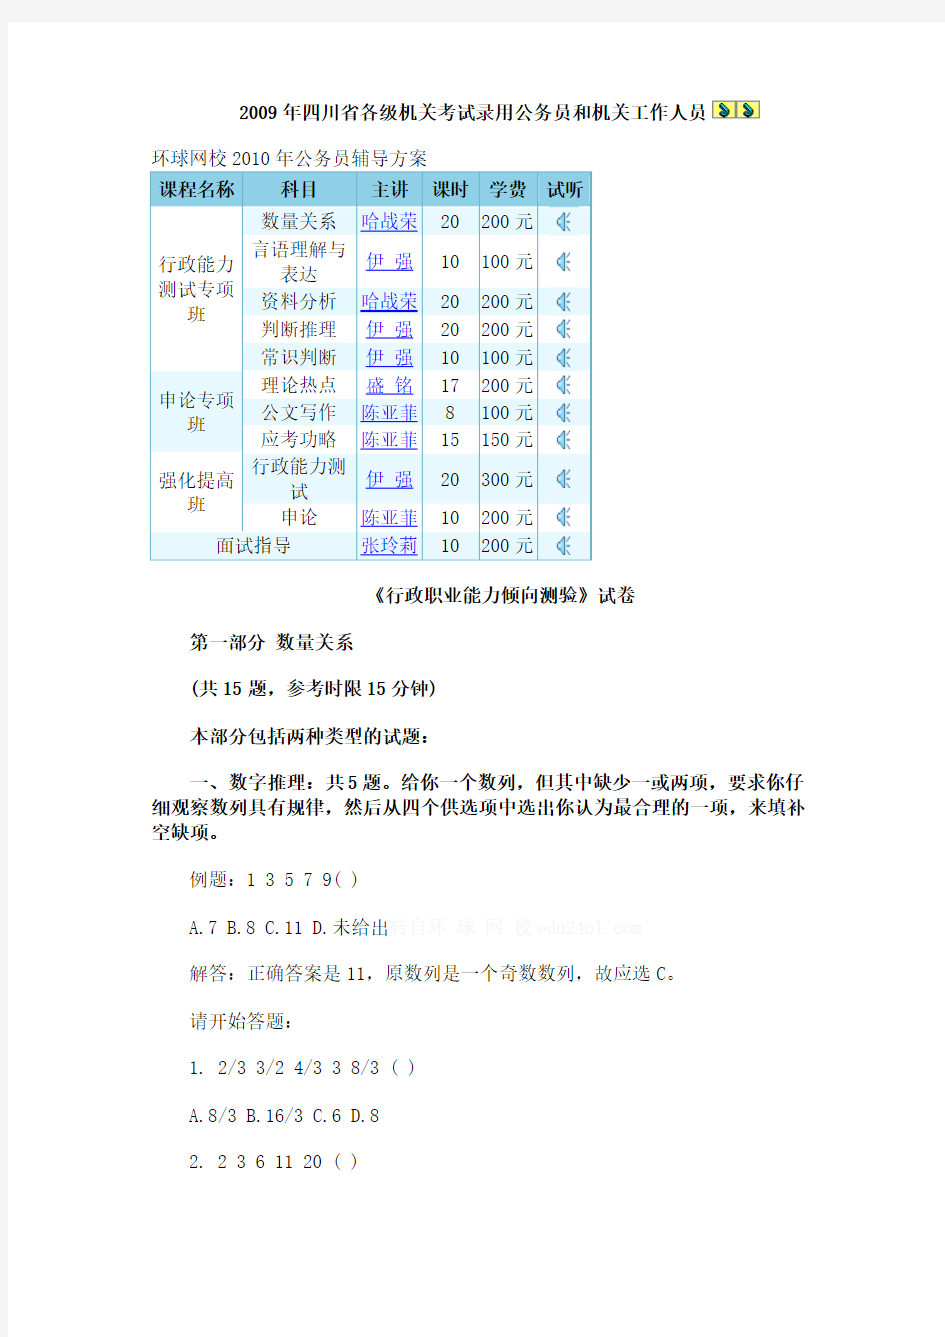 2009年四川省各级机关考试录用公务员和机关工作人员